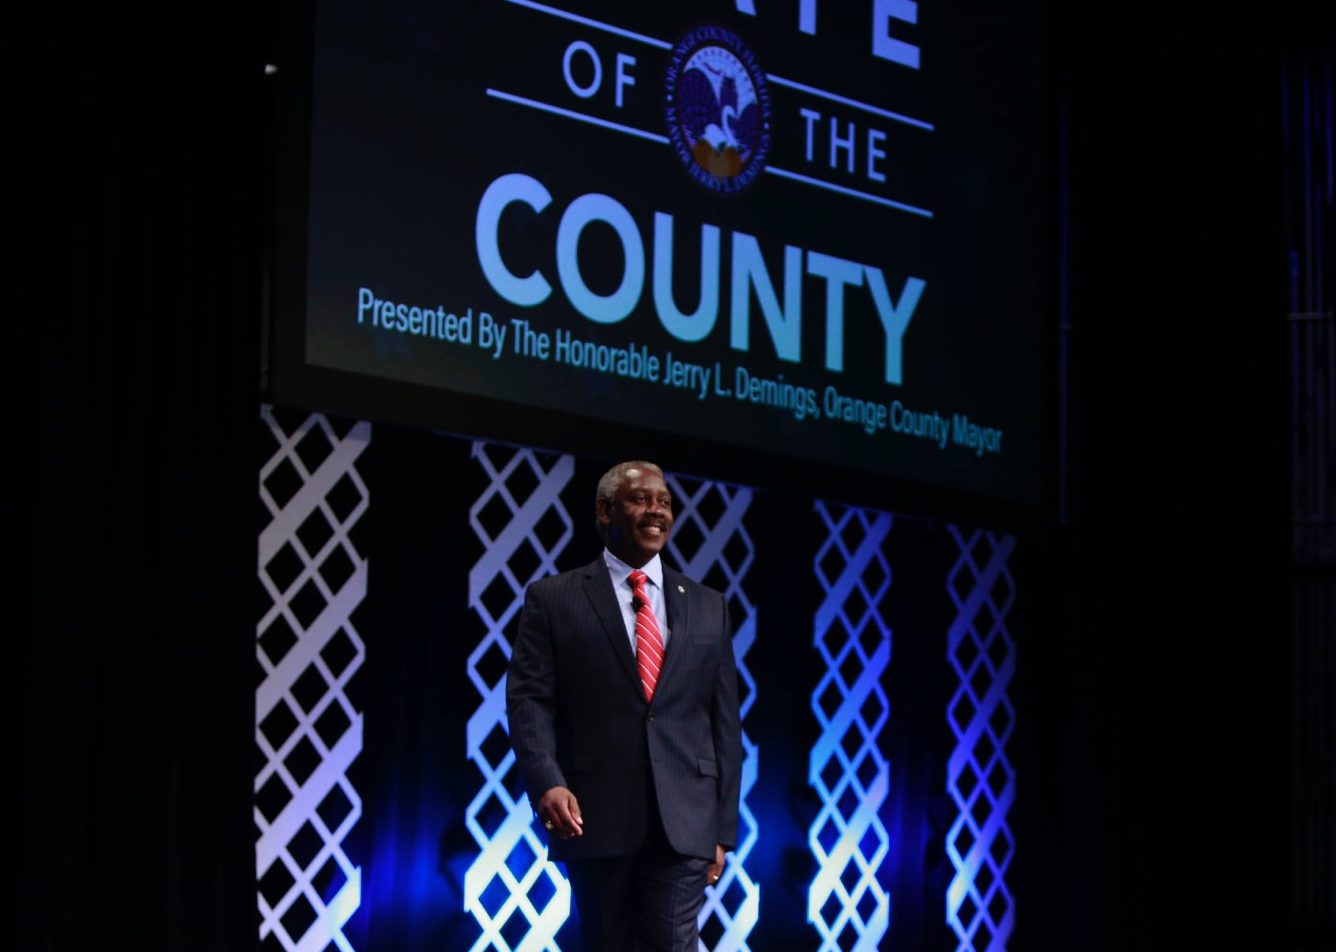 El Alcalde Demings parado en el escenario. Se puede leer "Estado del Condado" en el fondo.